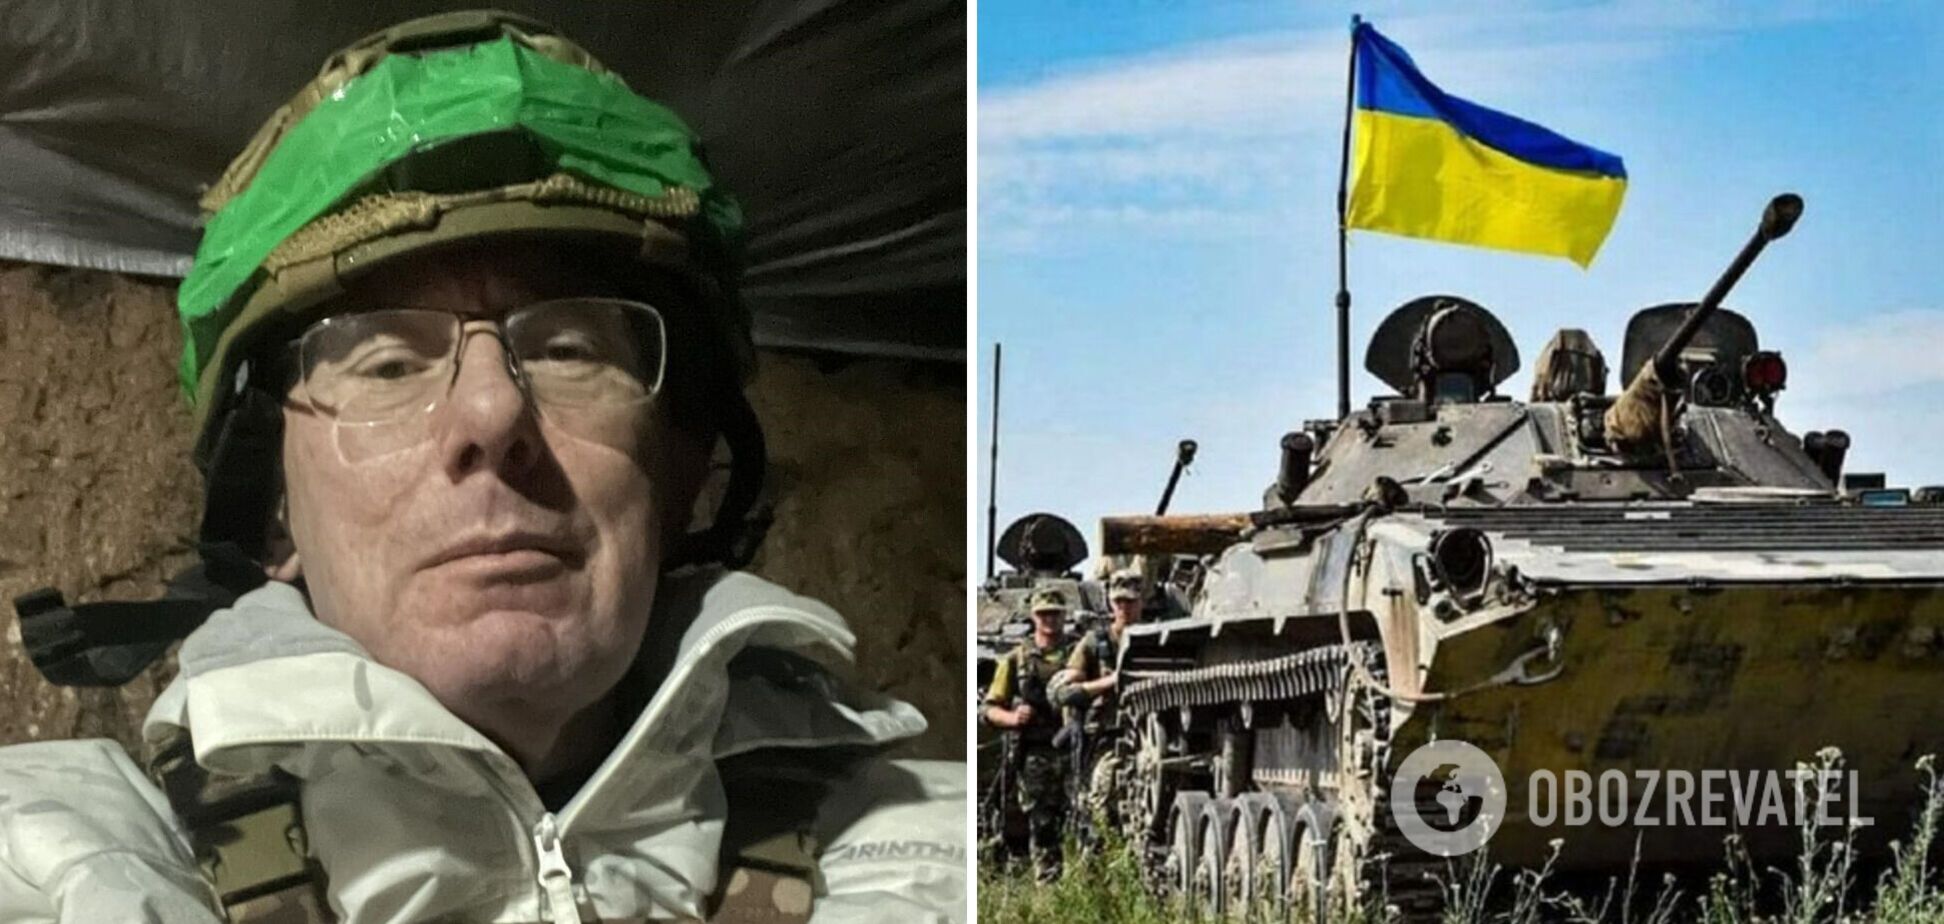 'Честью было служить в такой армии': Юрий Луценко заявил, что покидает ряды ВСУ из-за инвалидности, и рассказал, чем будет заниматься